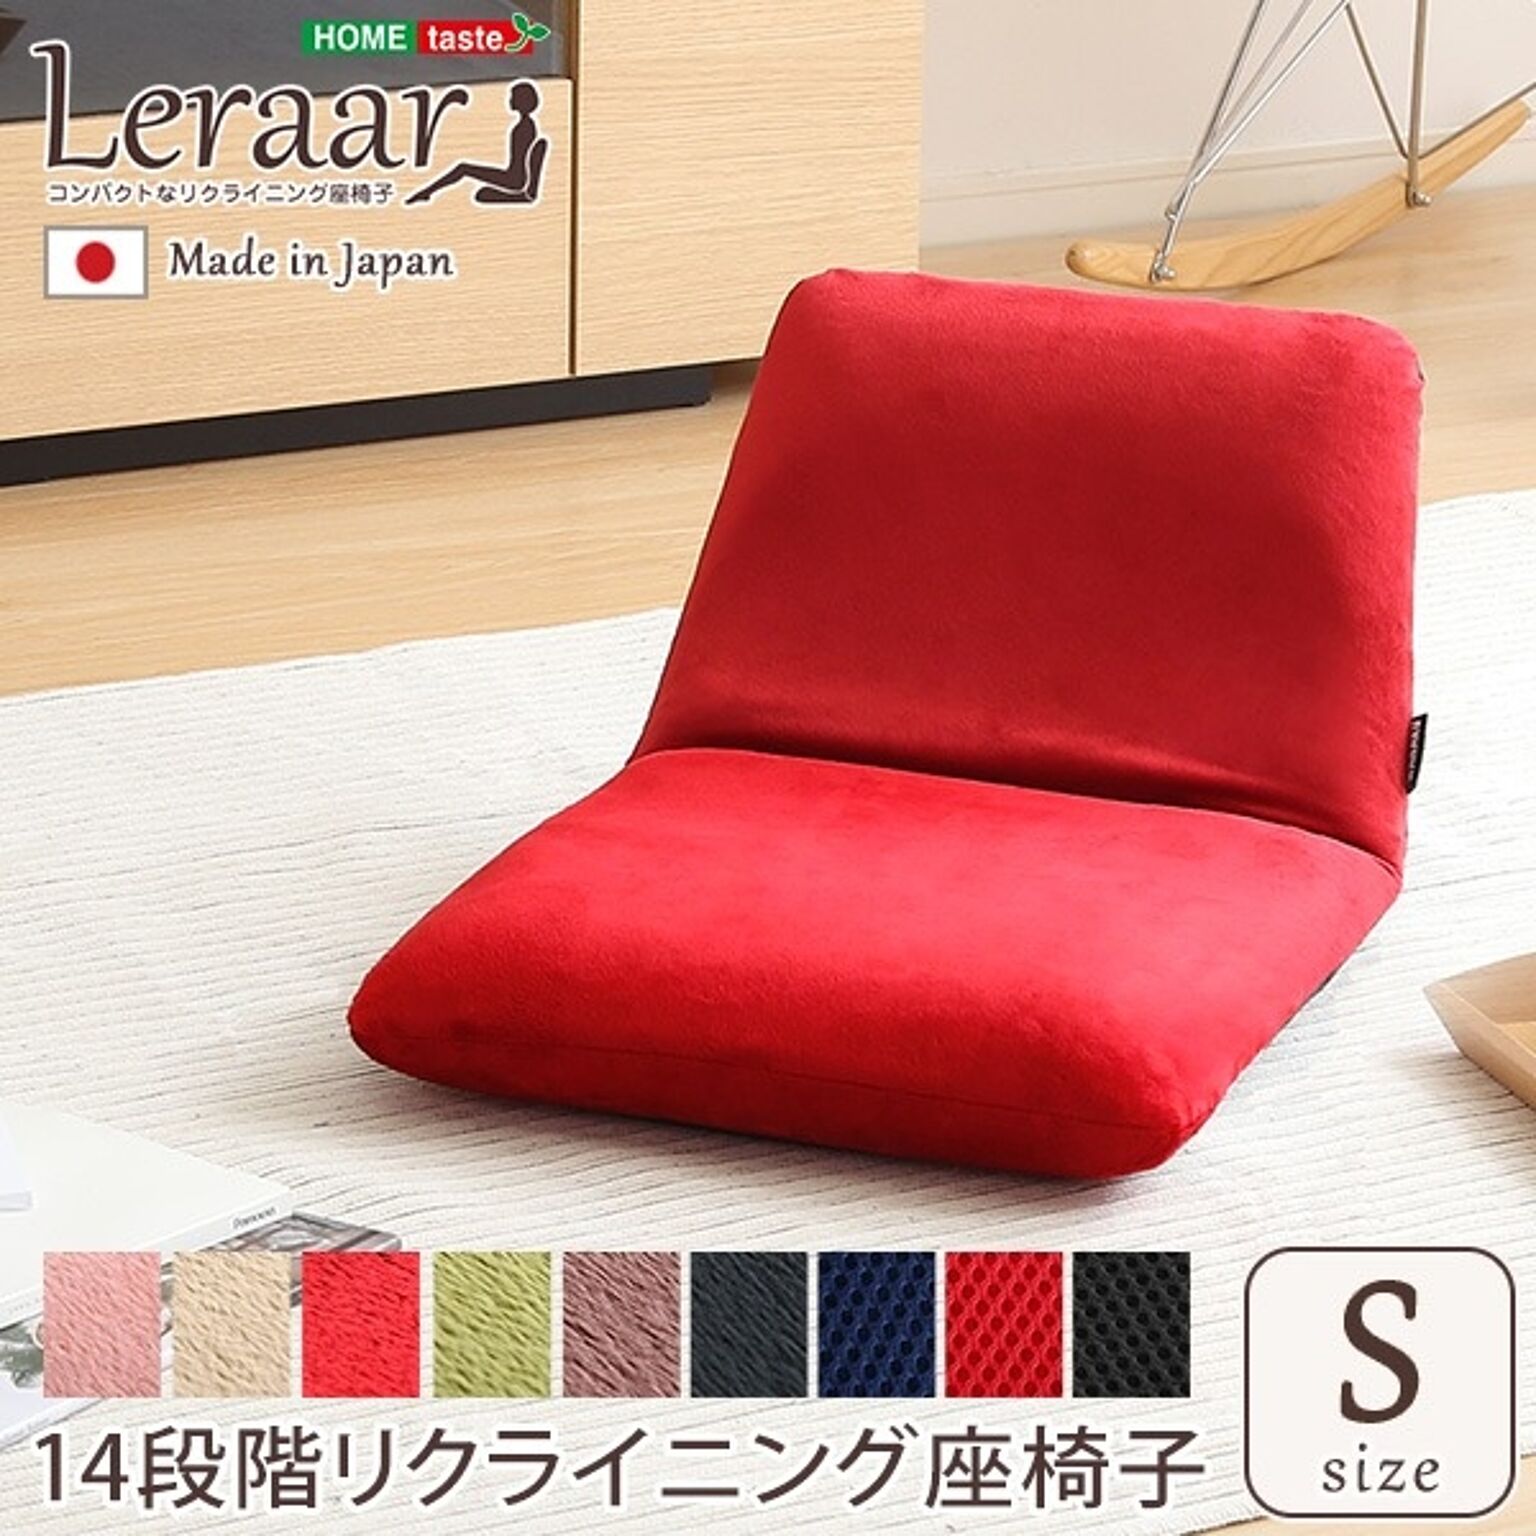 座椅子 フロアチェア Sサイズ 起毛ピンク 幅約43cm リクライニング式 スチールパイプ ウレタン 日本製 国産 完成品 リクライニングチェア パーソナルチェア ローチェア【代引不可】